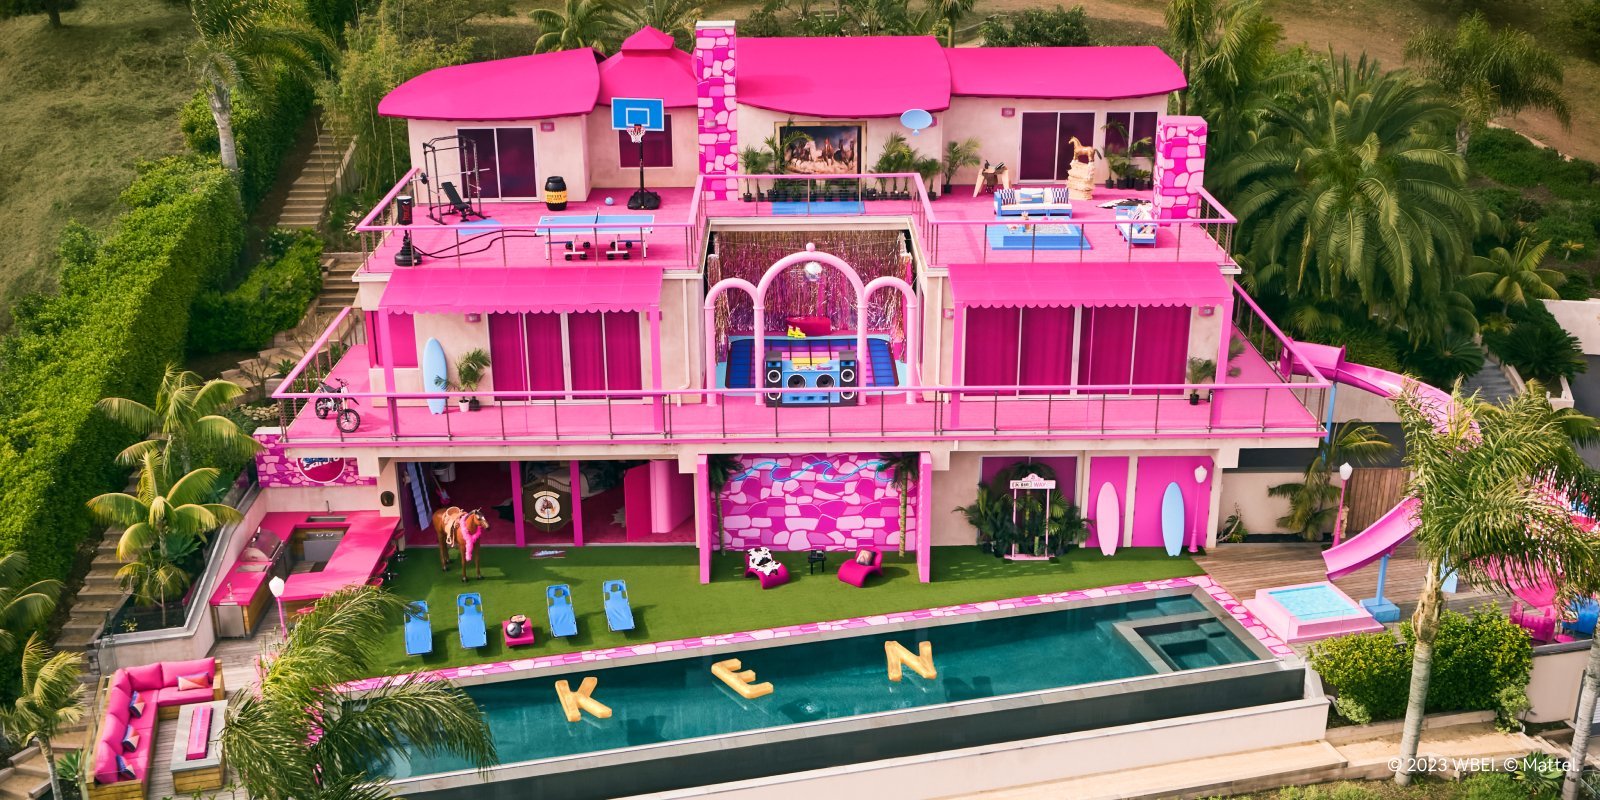 《芭比》粉色房子7月17日变成民宿 粉丝绘制《奥本海默》跨界图